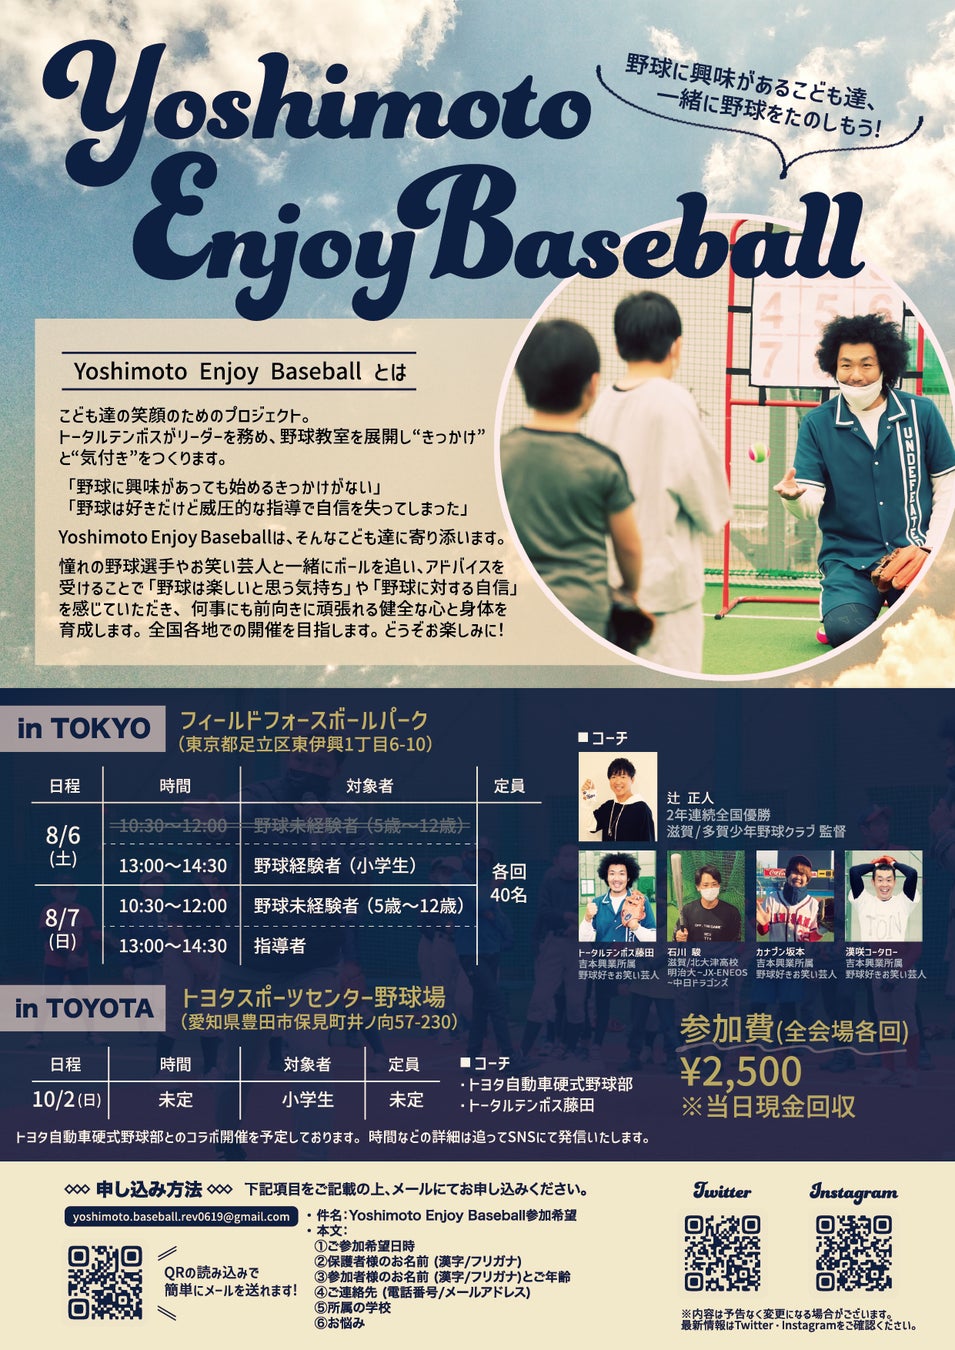 野球に興味があるこども達、一緒に野球をたのしもう！　Yoshimoto Enjoy Baseball～とにかく野球をたのしむイベント～のサブ画像4